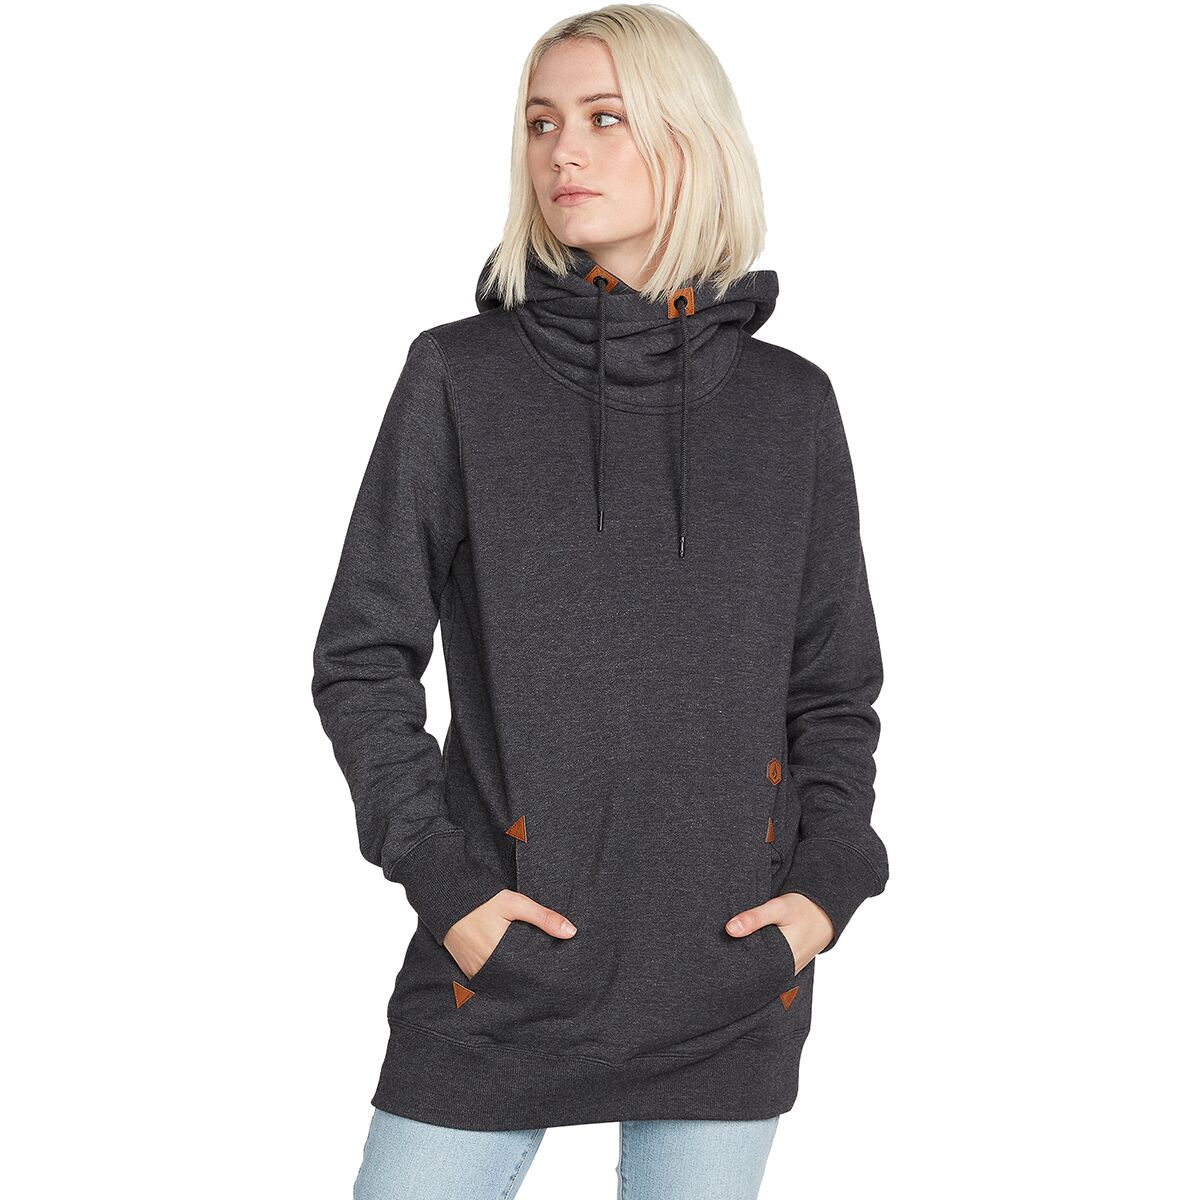 Volcom Tower Pullover Fleece Sweatshirt - Women's